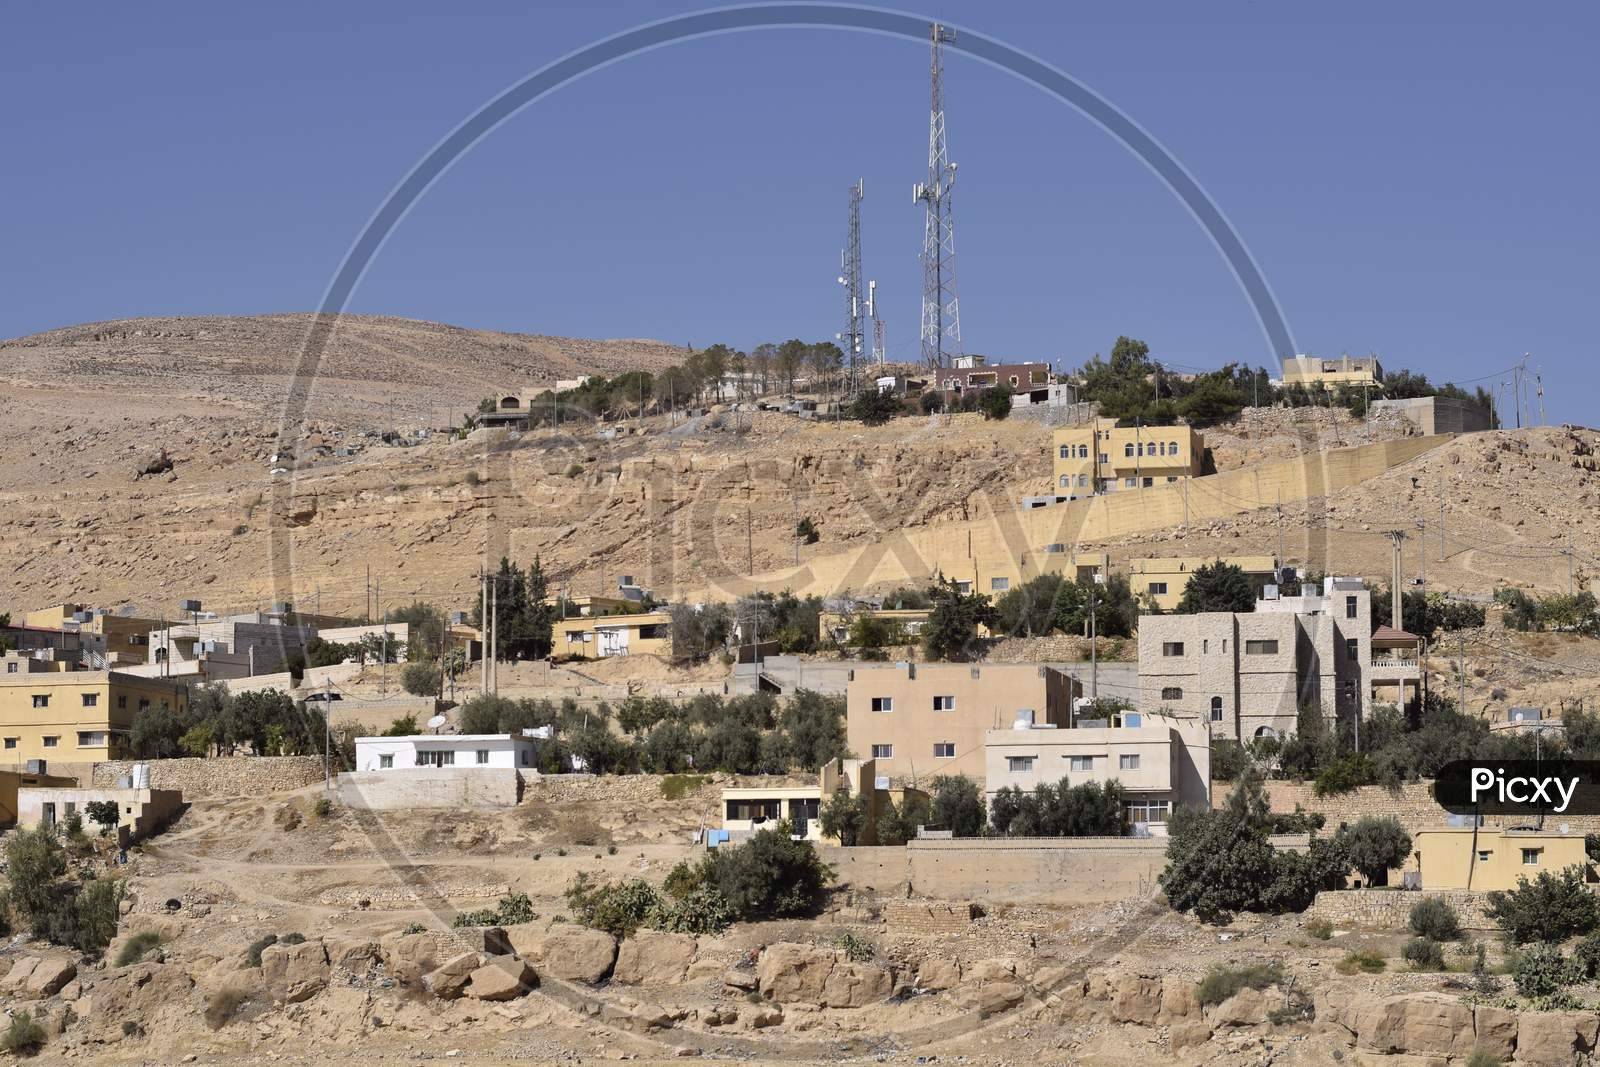 Countryside view of Jordan